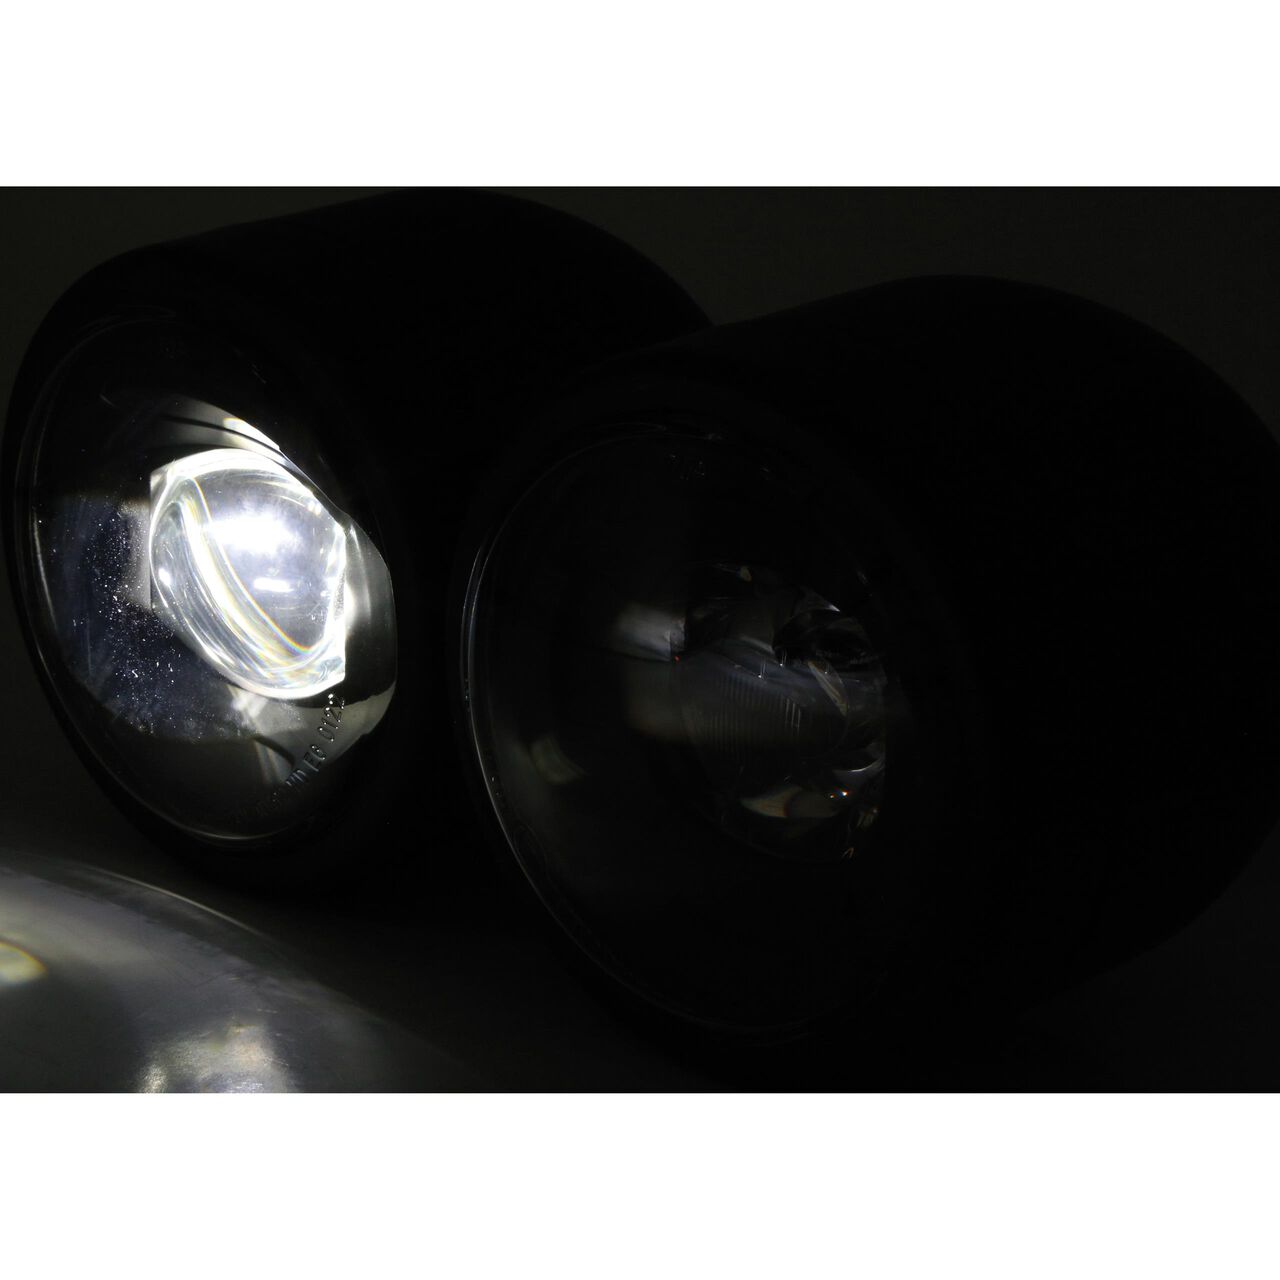 SHIN YO Fernscheinwerfereinsatz mit Standlicht, Metall, 90mm für H 4 Birne,  gepr. Glas - günstig kaufen ▷ FC-Moto